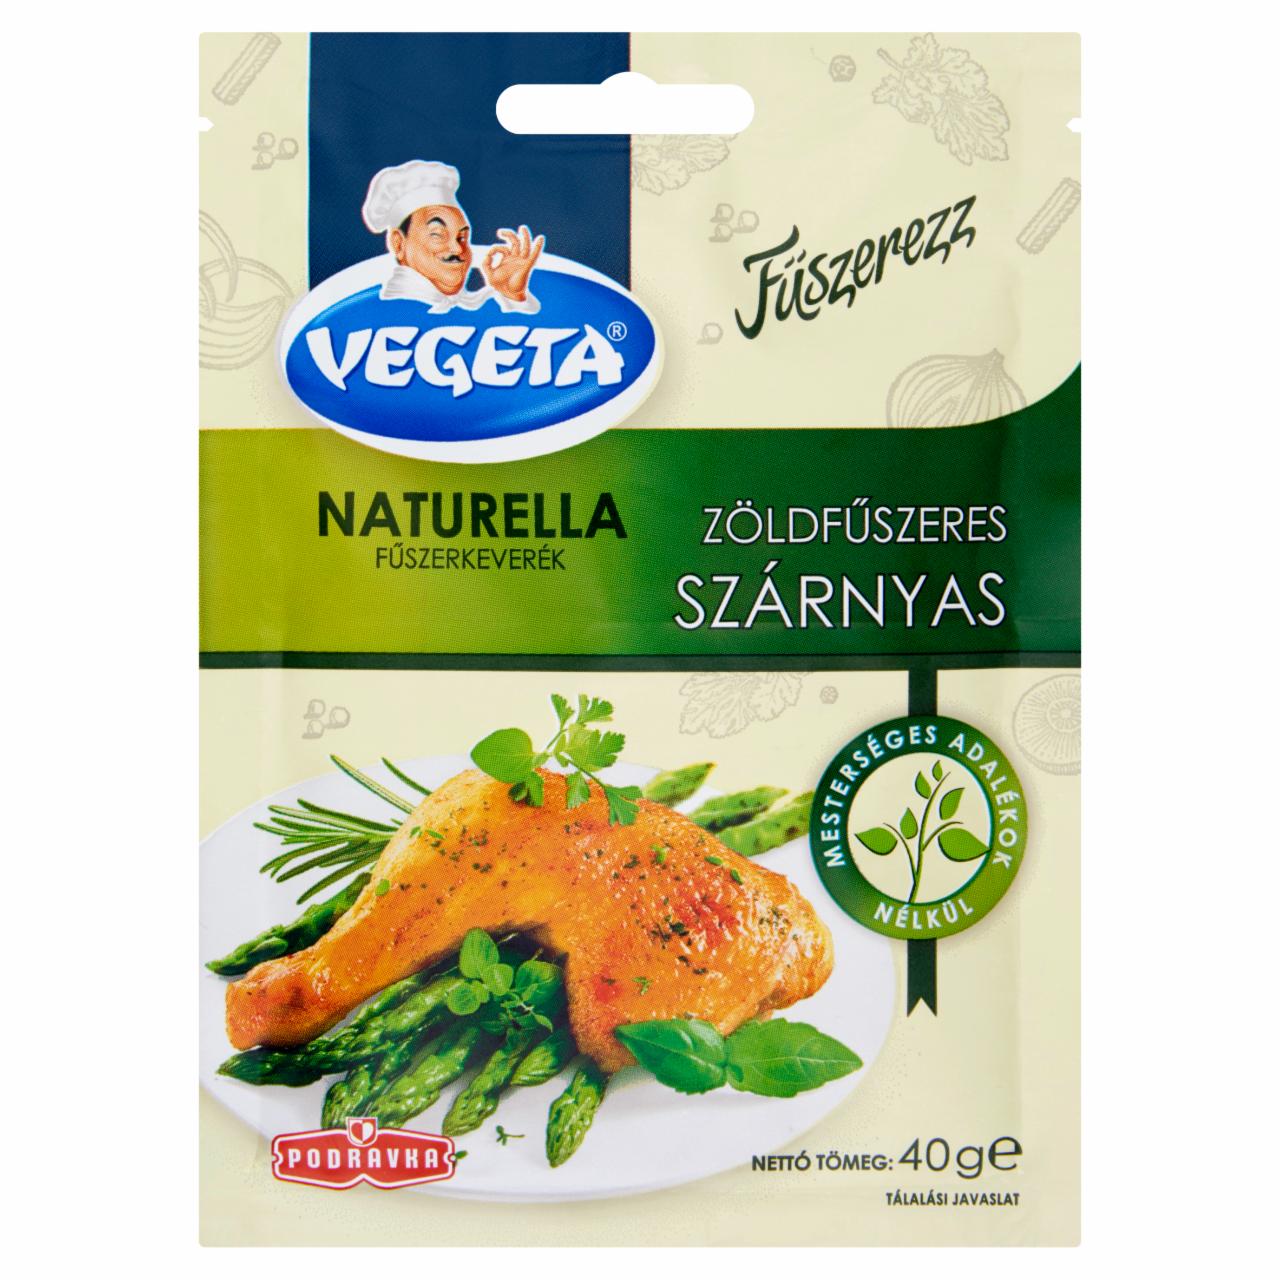 Képek - Vegeta Naturella zöldfűszeres szárnyas fűszerkeverék 40 g